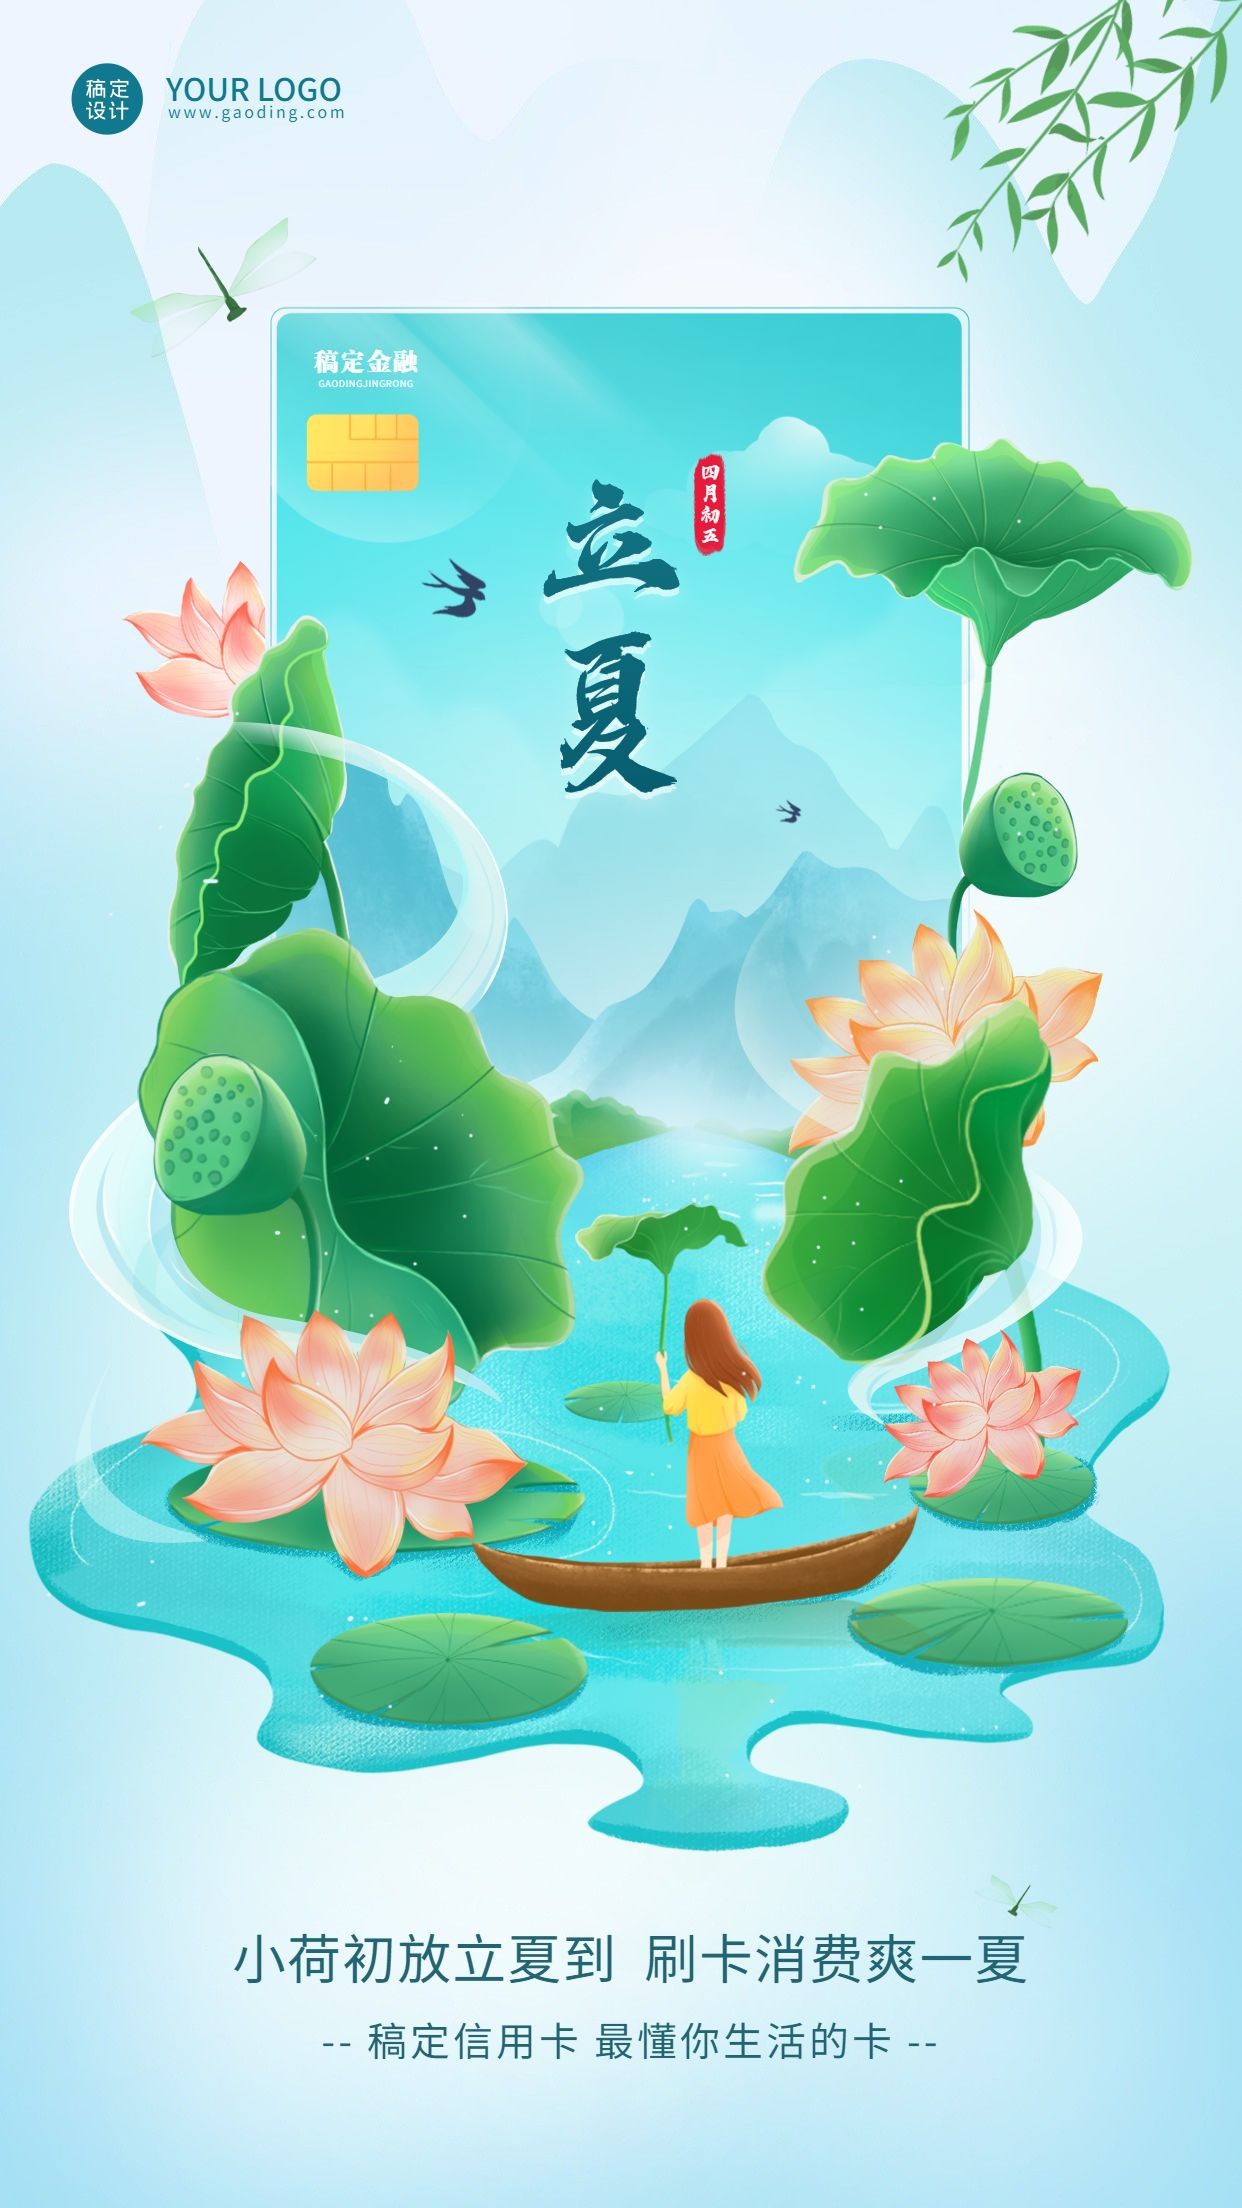 立夏金融保险节气祝福创意插画清新中国风海报预览效果